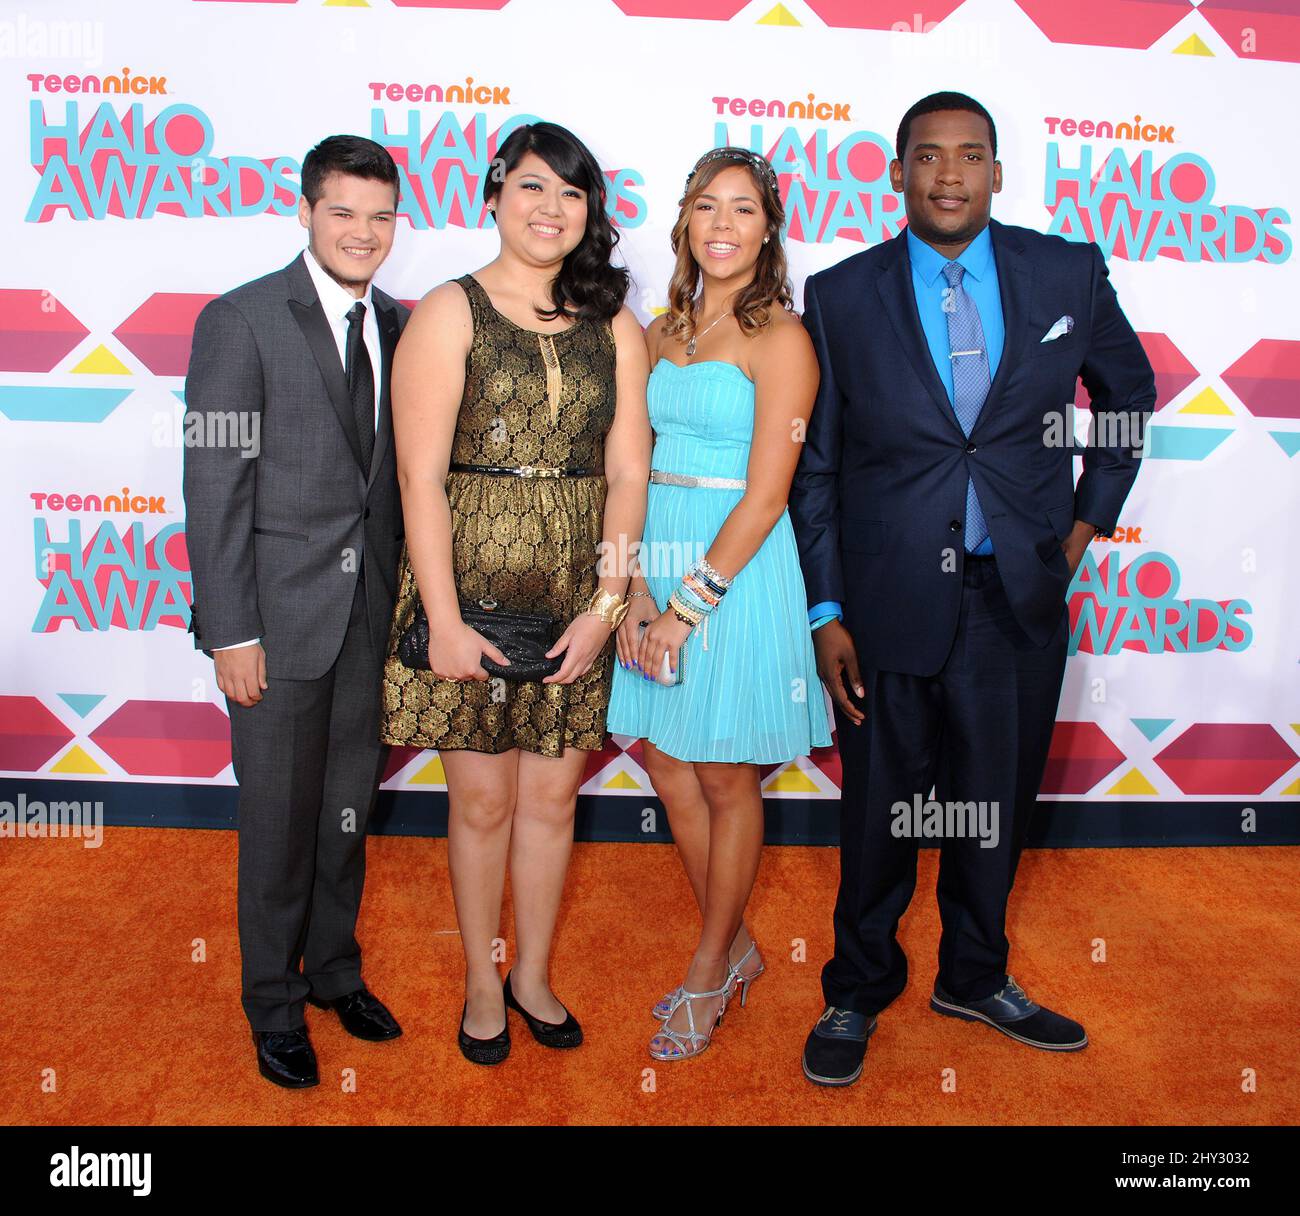 Zachary Kerr, Miranda Fuentes, Rocio Oretga et Denzel Thompson ont assisté aux TeenNick HALO Awards qui se sont tenus au Hollywood Palladium à Los Angeles, en Californie. Banque D'Images